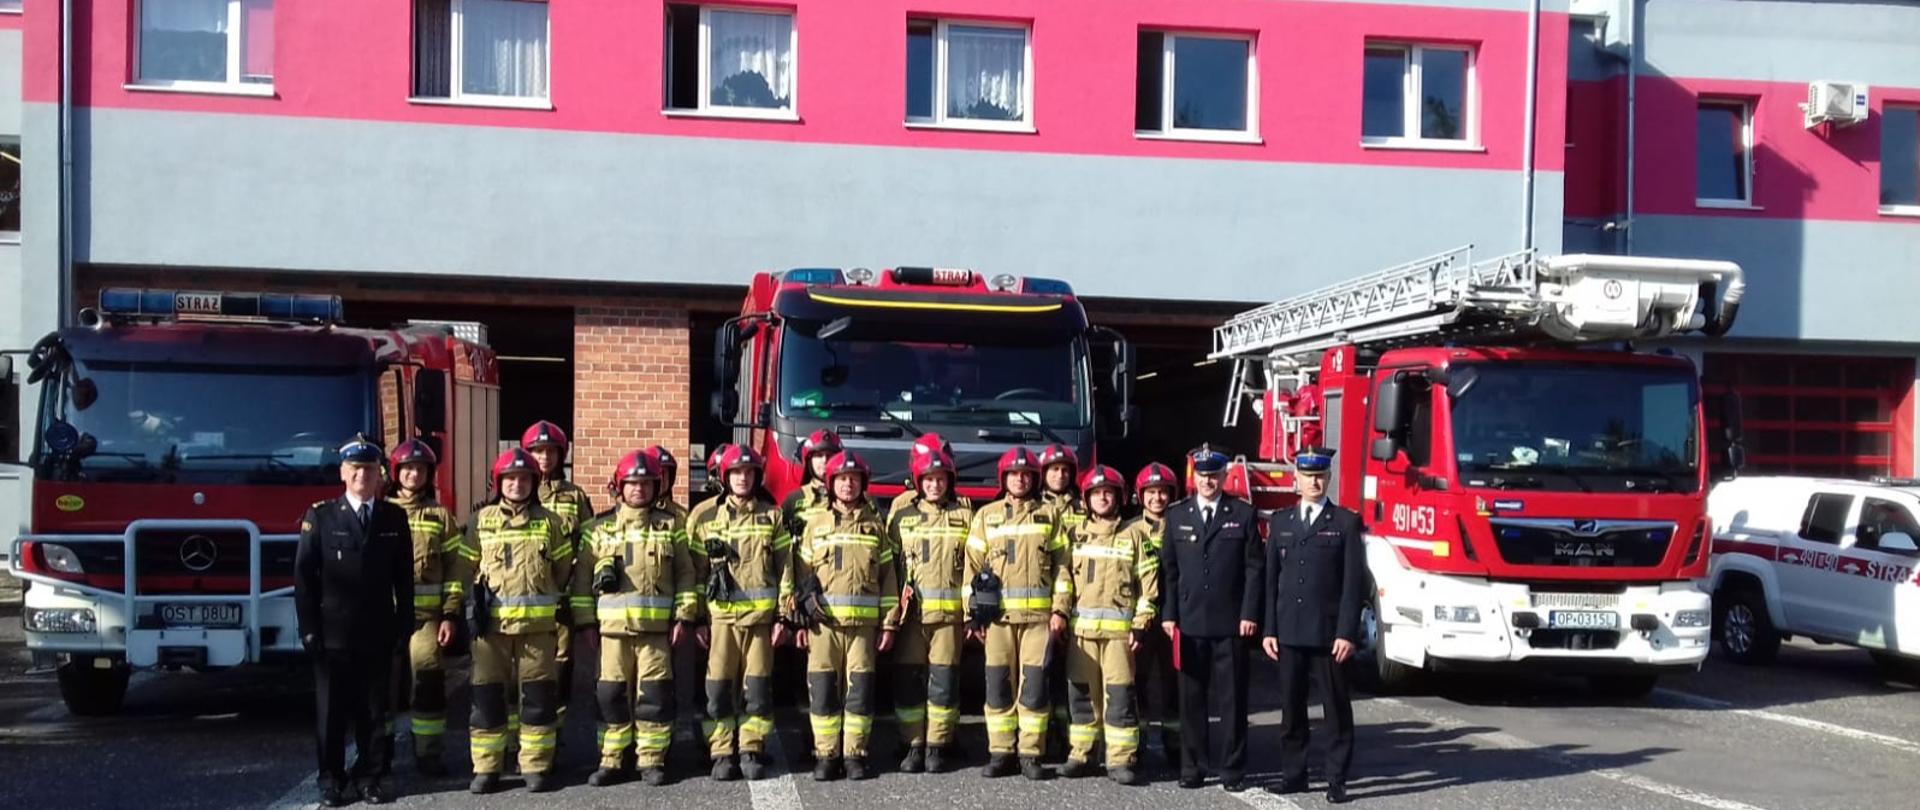 Na zdjęciu znajdują się strażacy w mundurach na tle samochodów pożarniczych i budynku komendy